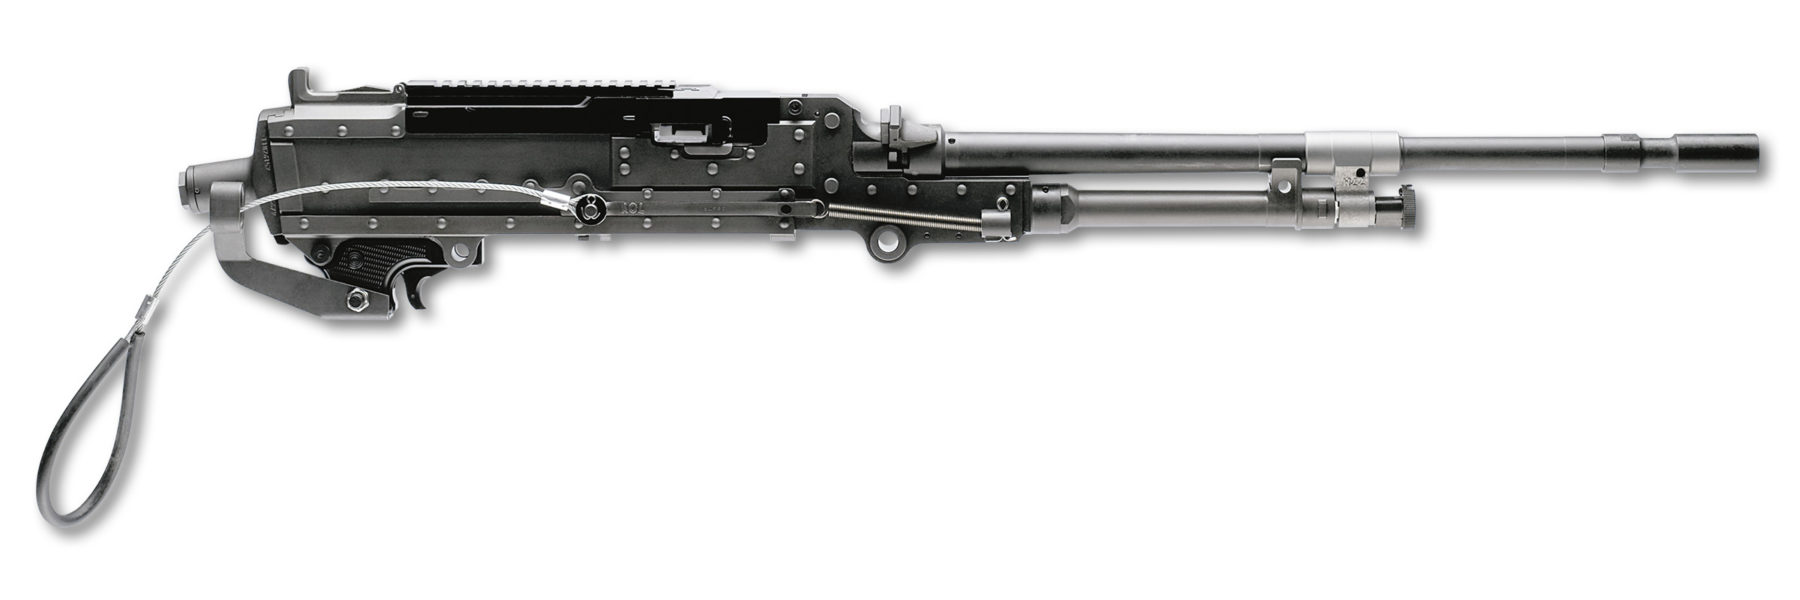 FN M240